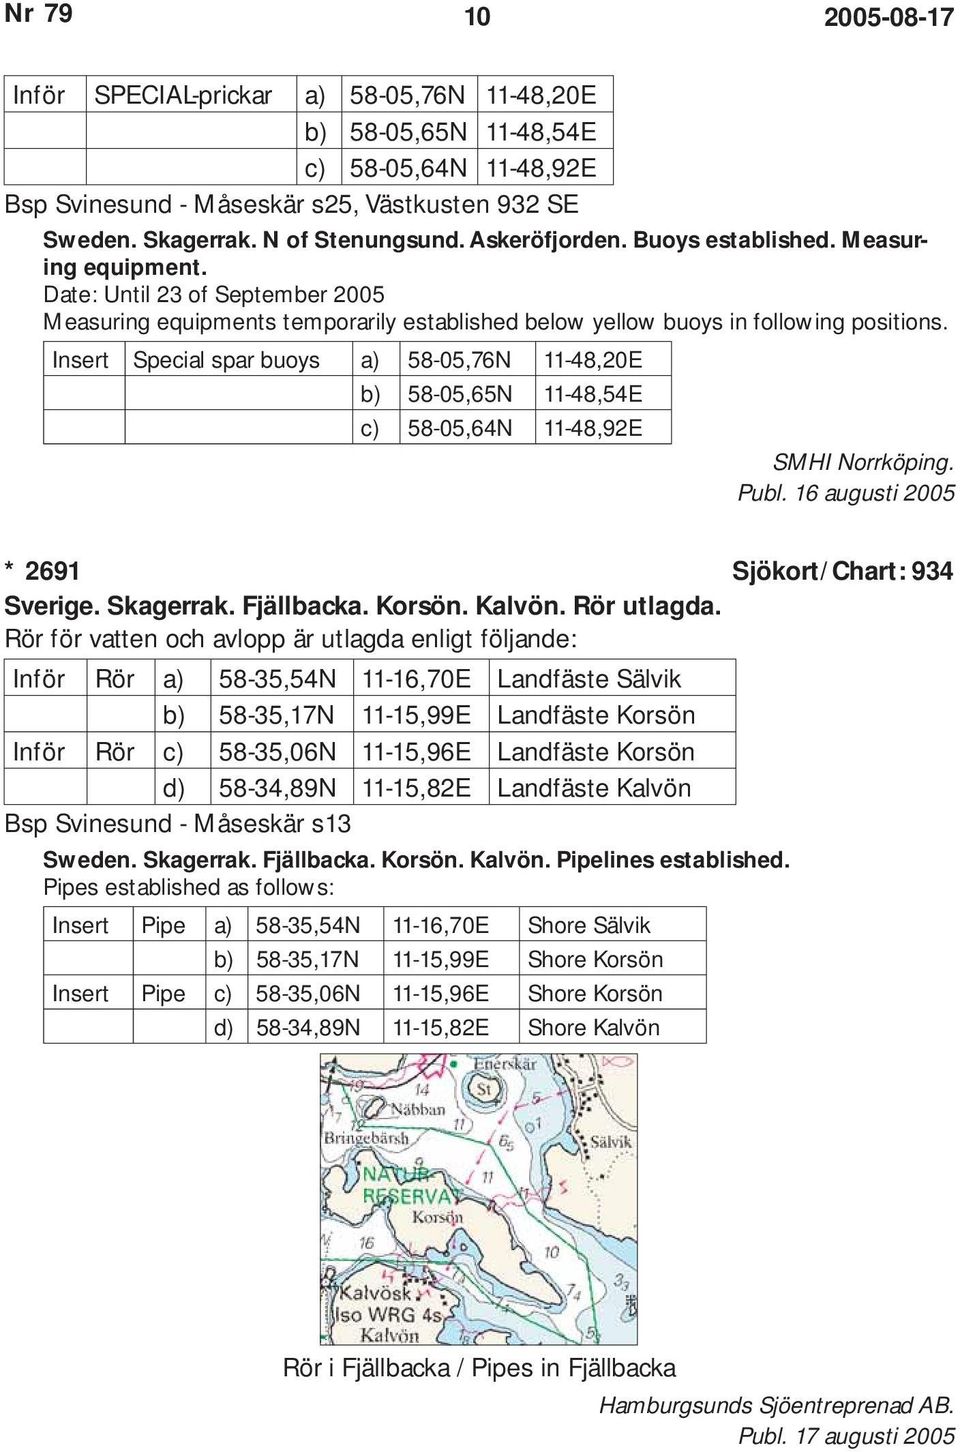 Insert Special spar buoys a) 58-05,76N 11-48,20E b) 58-05,65N 11-48,54E c) 58-05,64N 11-48,92E SMHI Norrköping. Publ. 16 augusti 2005 * 2691 Sjökort/Chart: 934 Sverige. Skagerrak. Fjällbacka. Korsön.